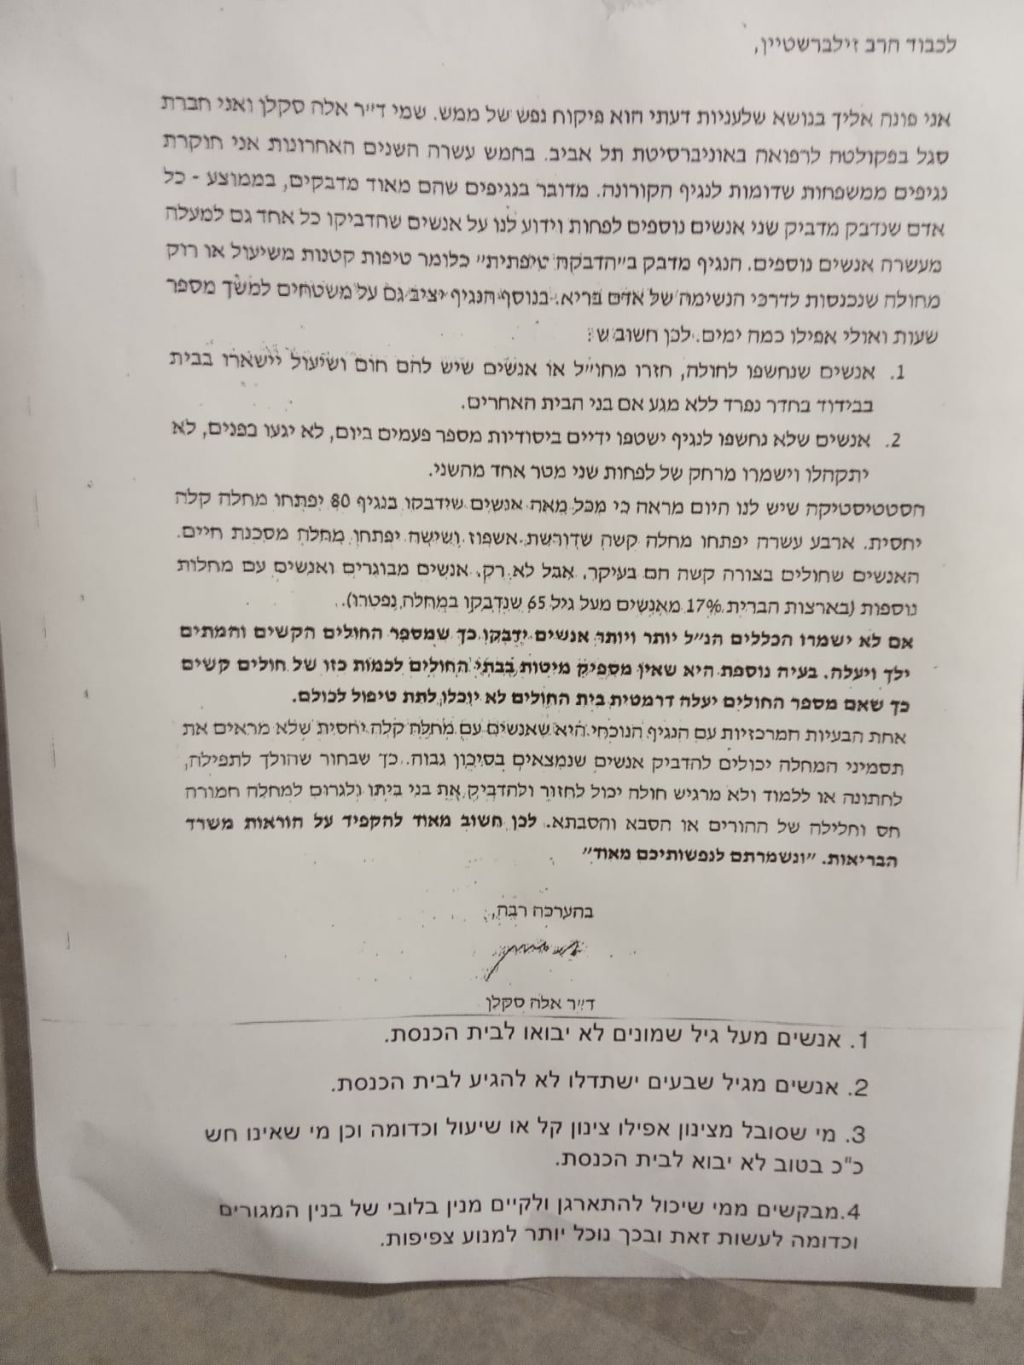 La carta de la Dra. Saklan al Rabino Zilberstein, que él publicó con indicaciones al final acerca de cómo proceder